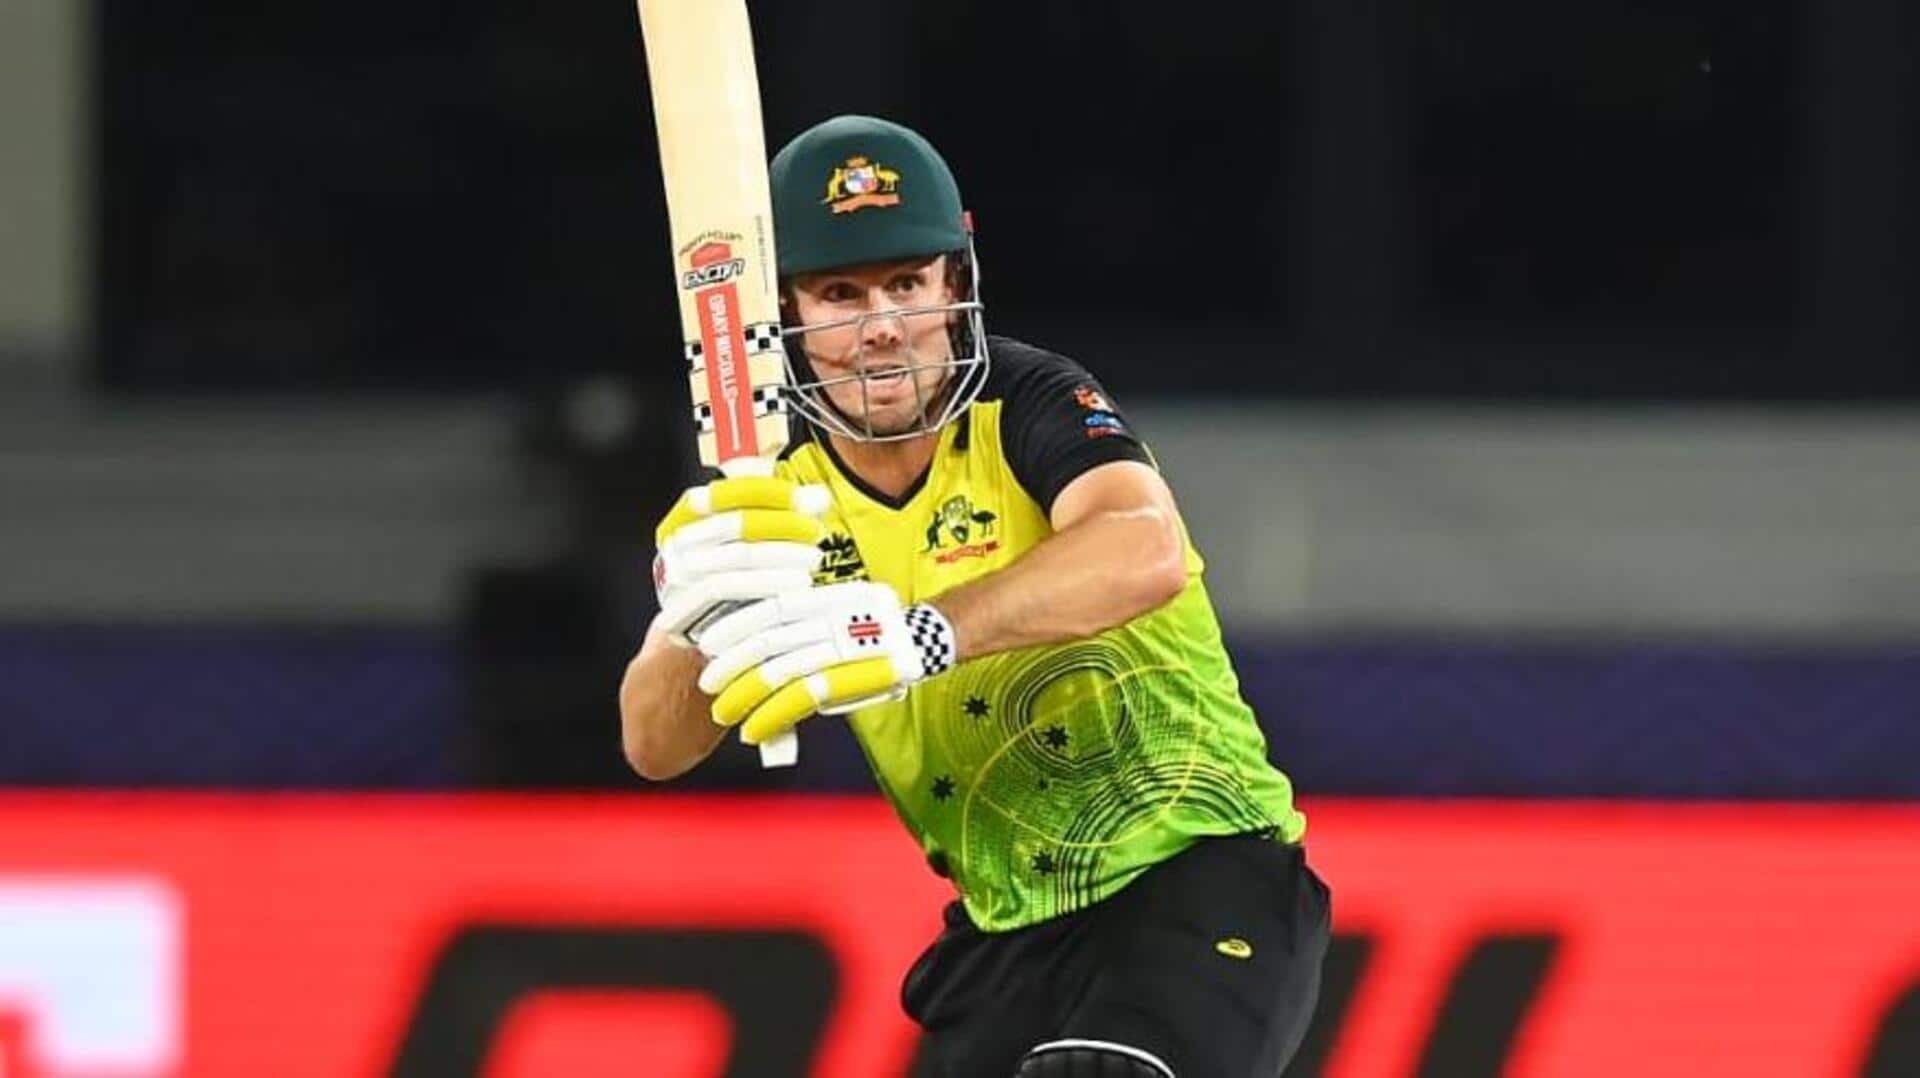 दक्षिण अफ्रीका दौरे के लिए मिचेल मार्श बने ऑस्ट्रेलिया के टी-20 कप्तान, जानिए उनके आंकड़े 